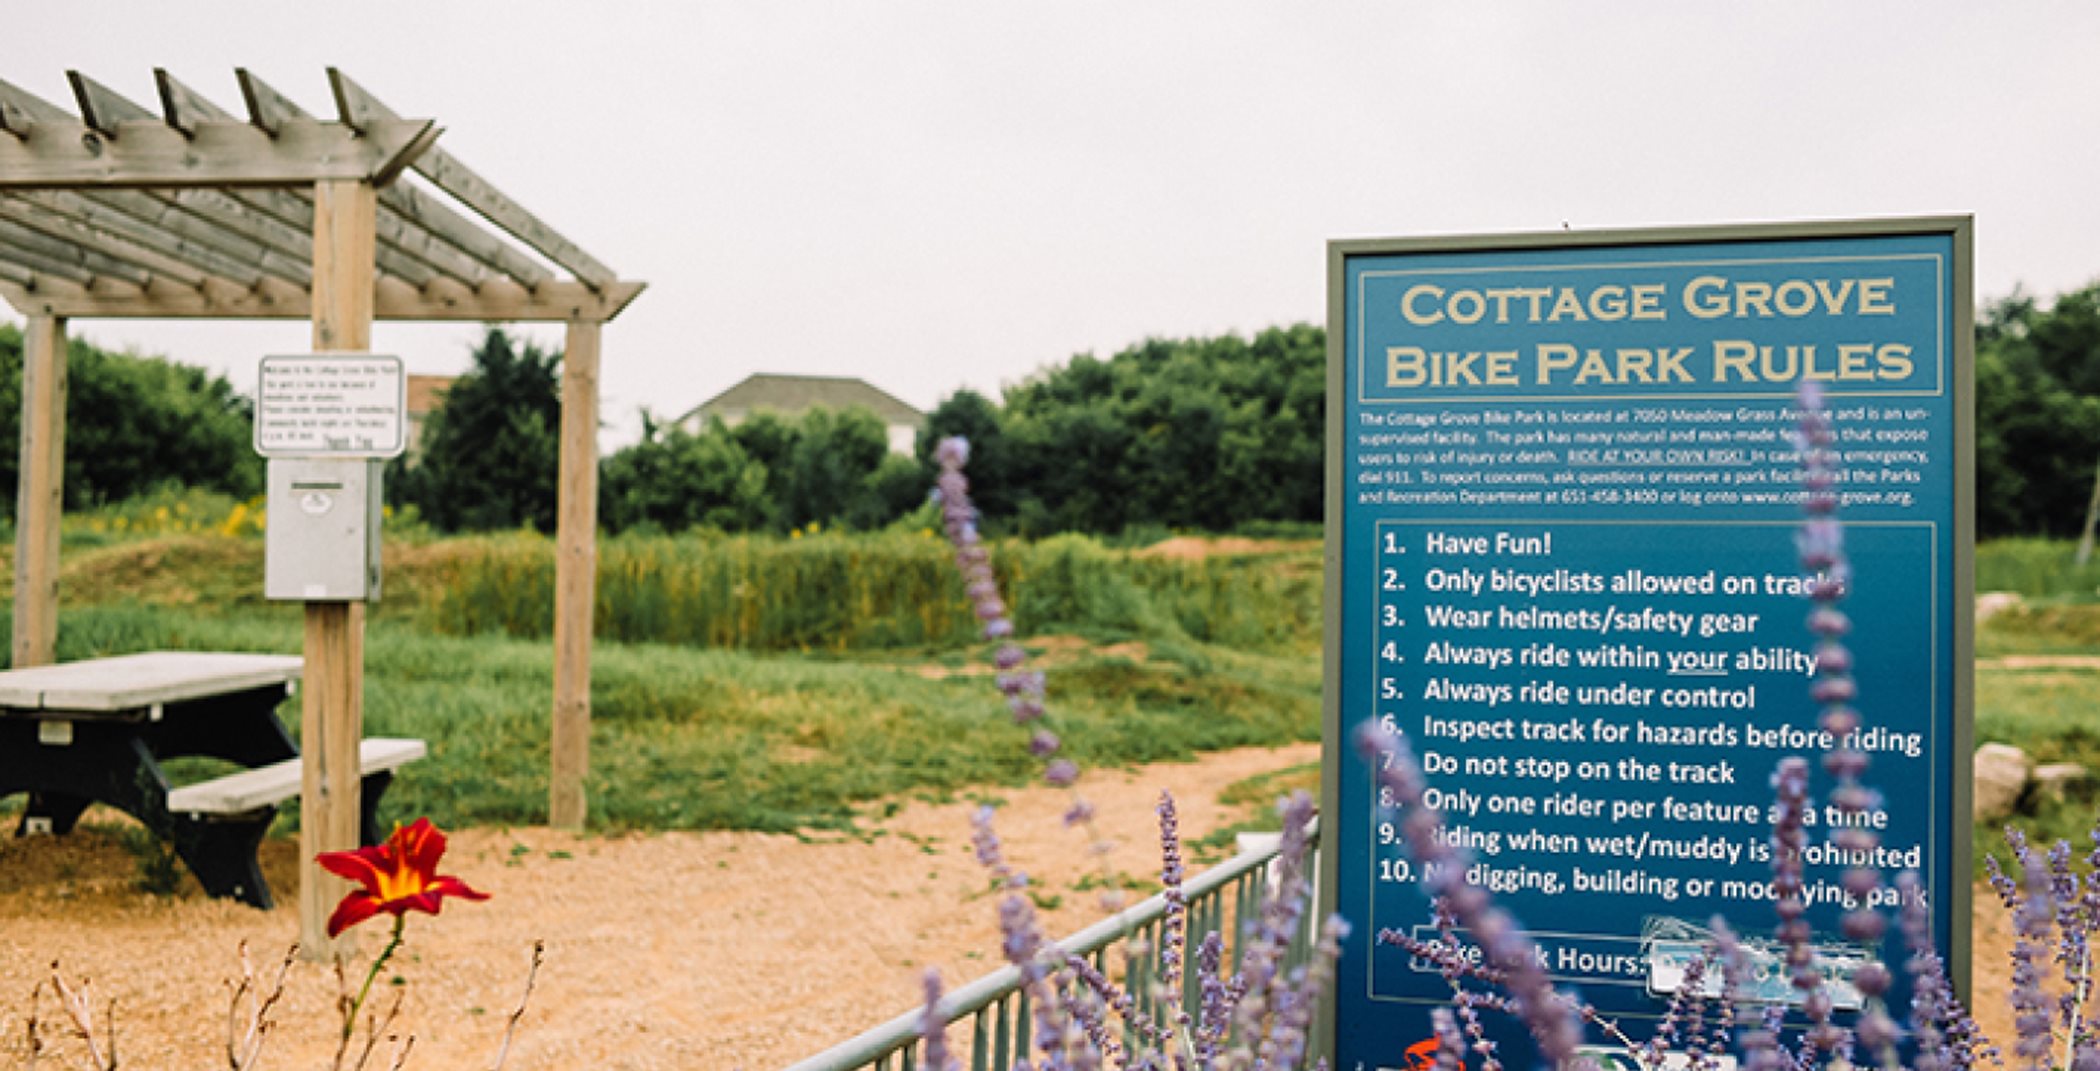 Cottage Grove Bike Park